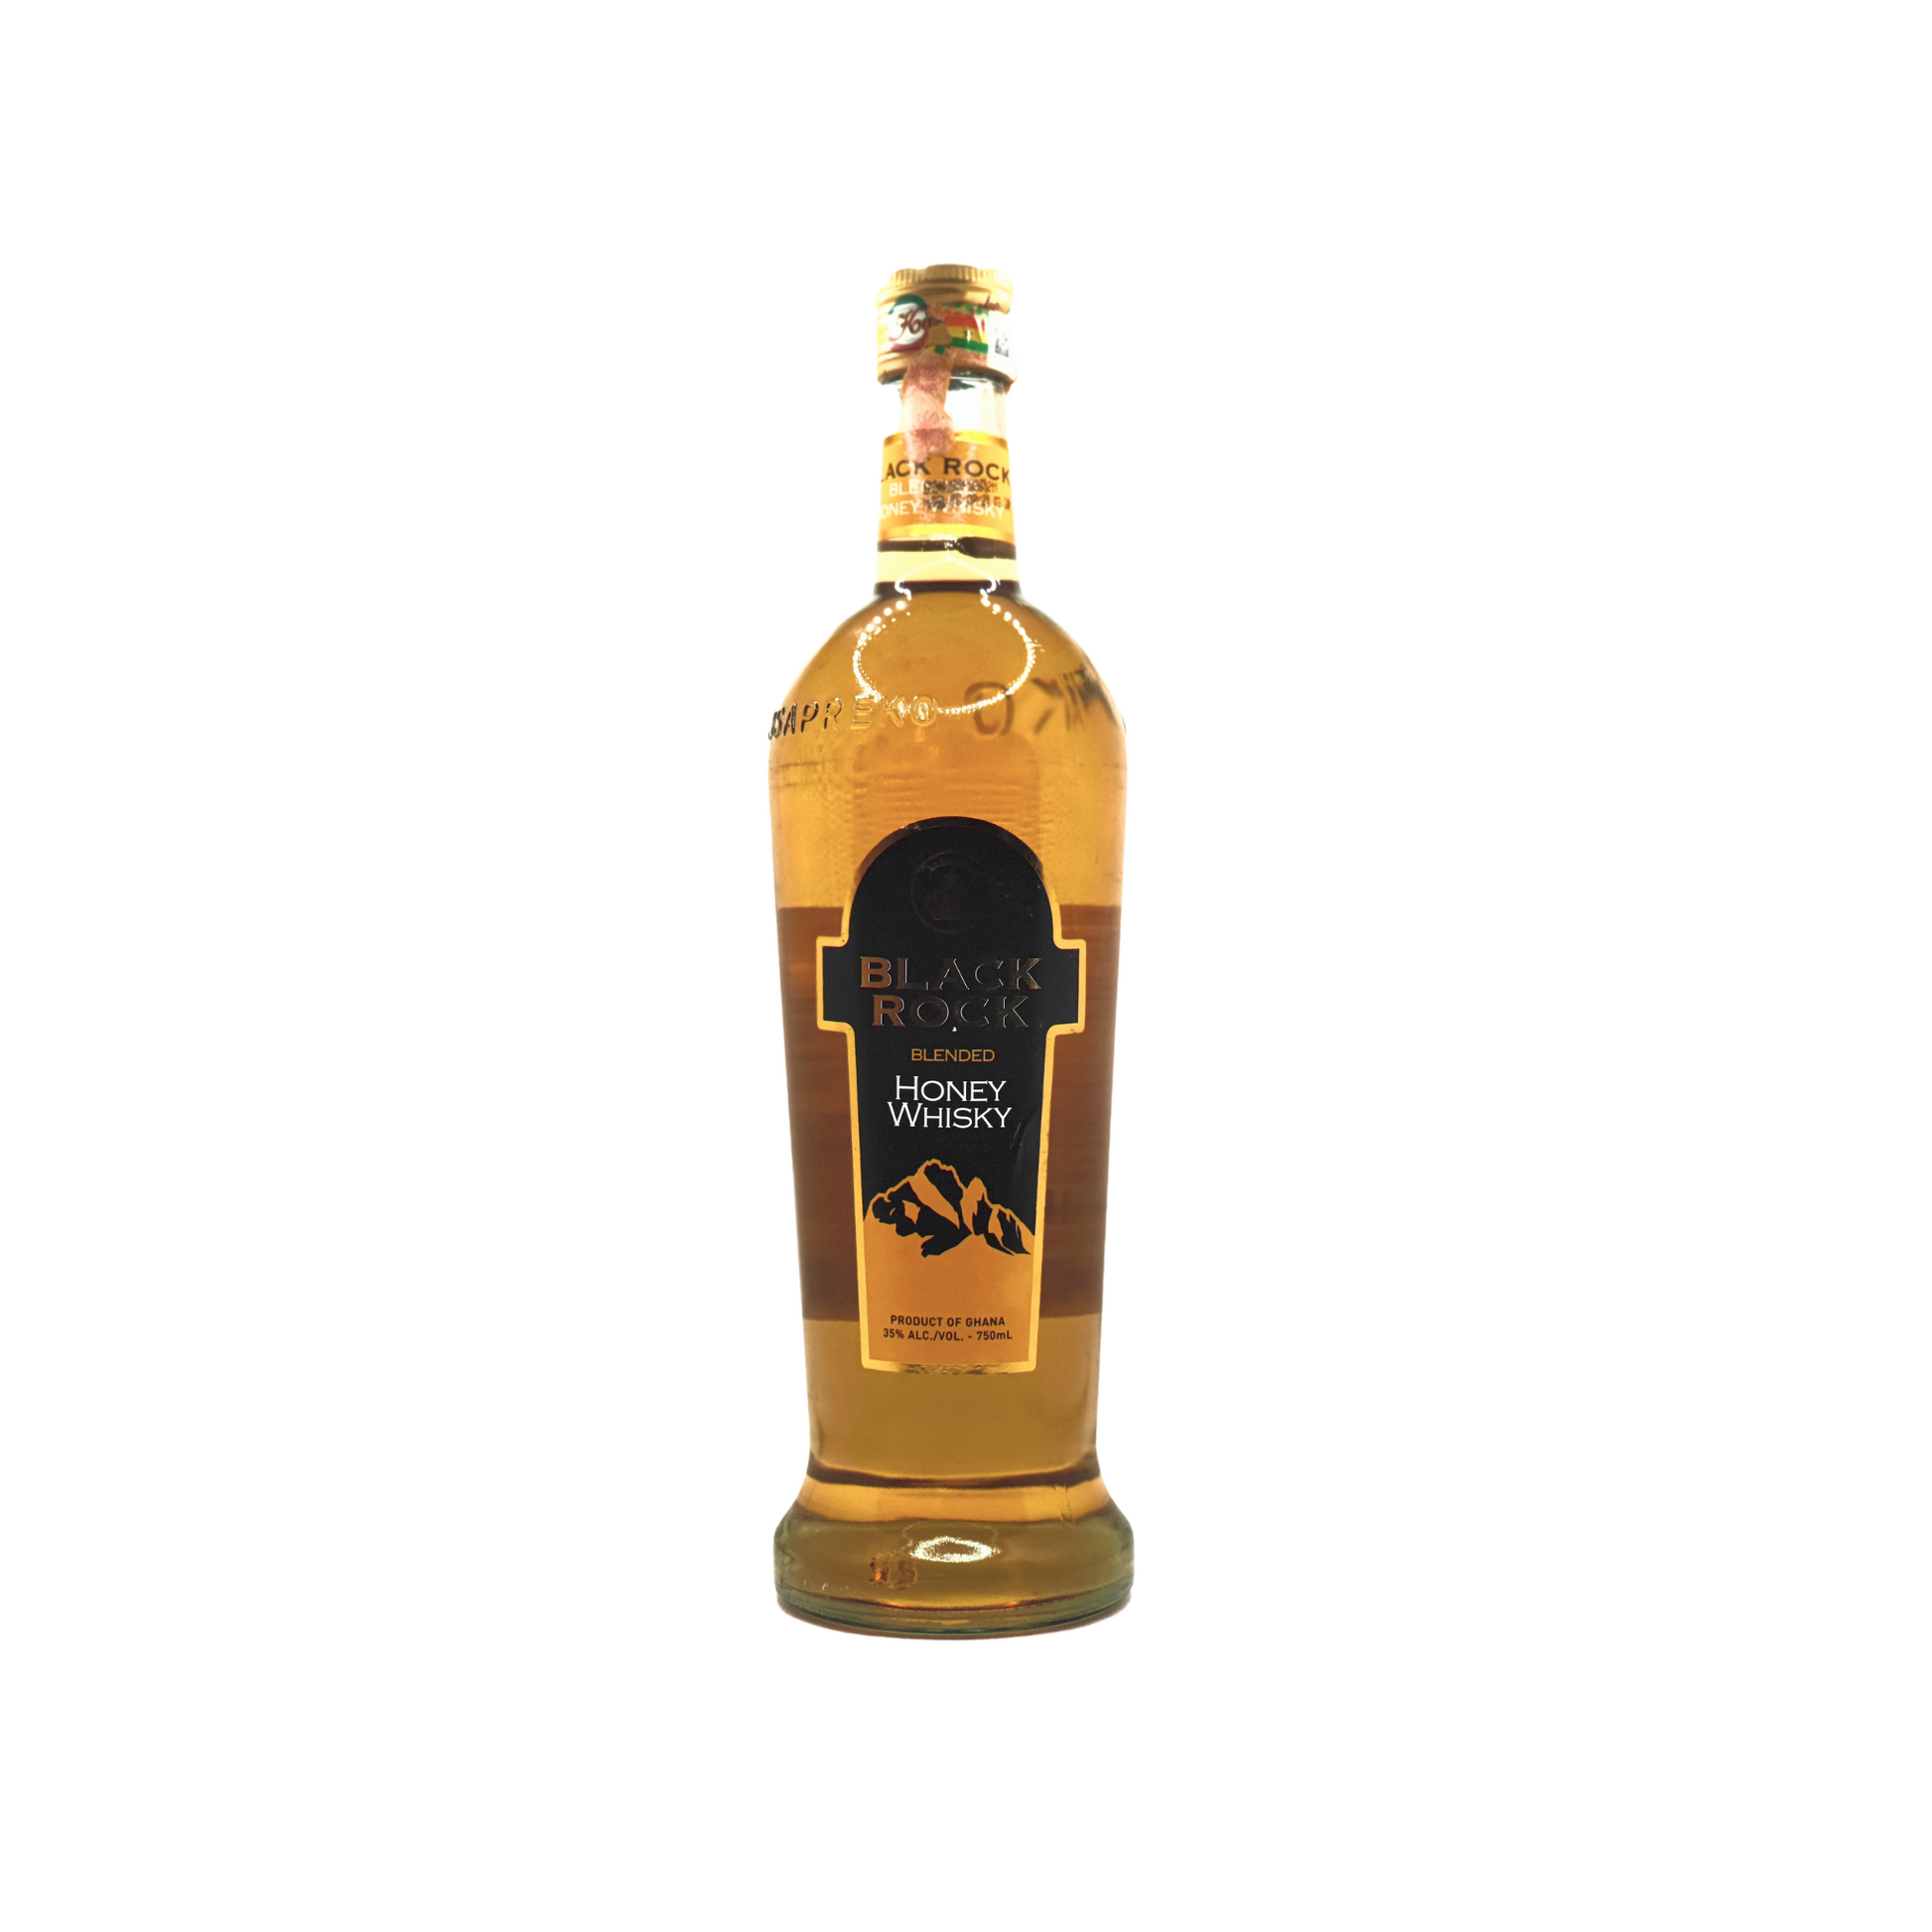 750 millilitre bottle of black rock blended honey whisky